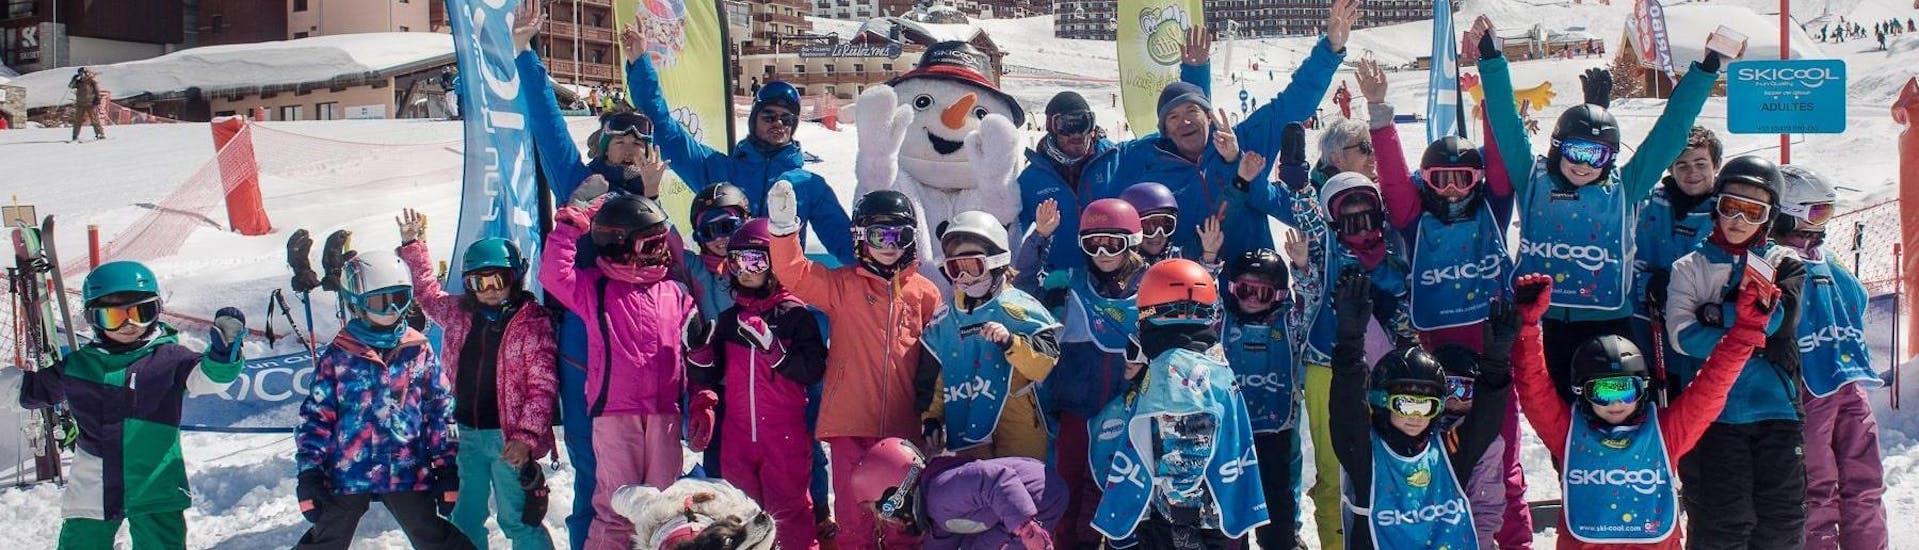 Les enfants sont impatients de commencer leur Cours de ski Enfants (5-12 ans) - Vacances - Matin avec l'école de ski Sno Cool Val Thorens.